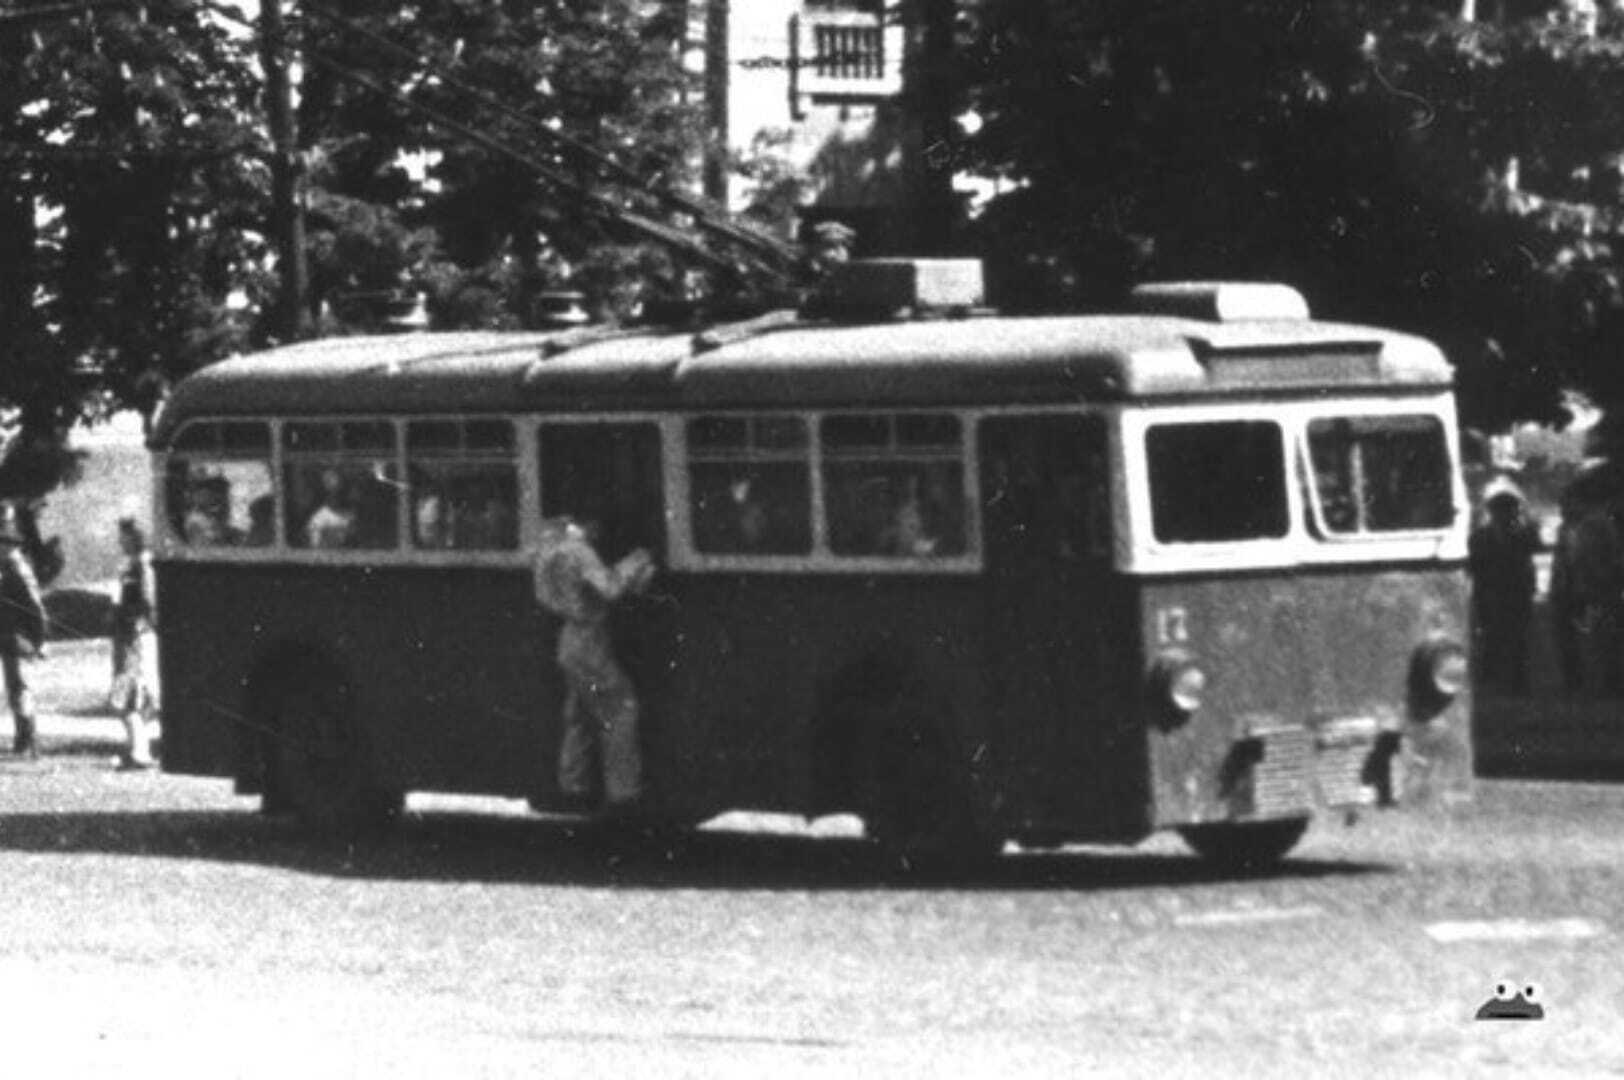 МАНи на дорогах Києва: майже 80 років тому у столиці пасажирів перевозили незвичайні тролейбуси. Архівні фото